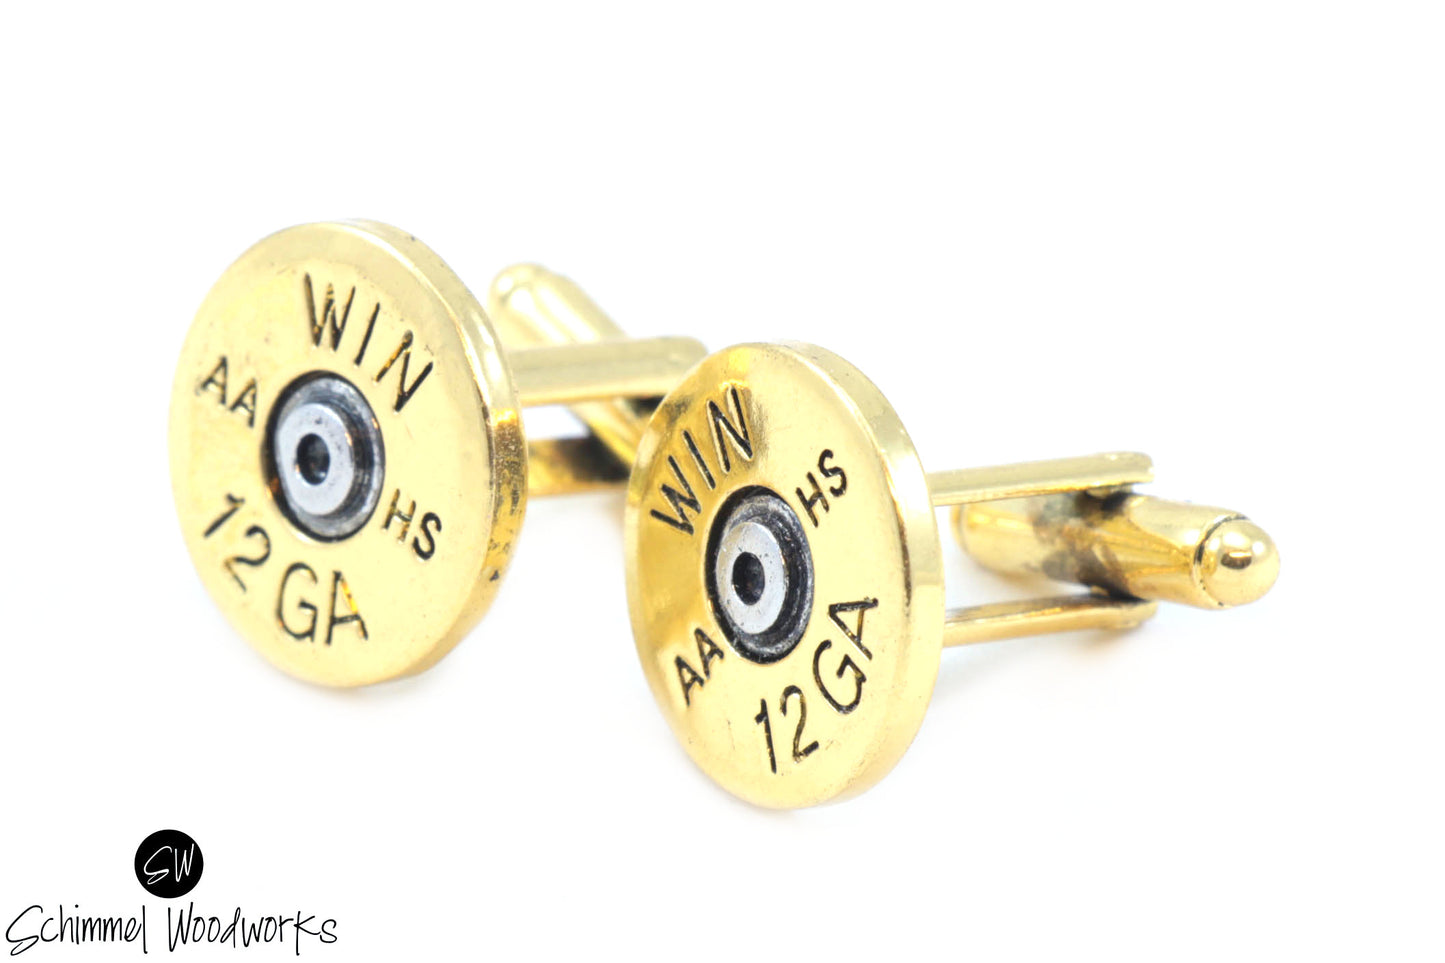 12 GA Bullet Cufflinks